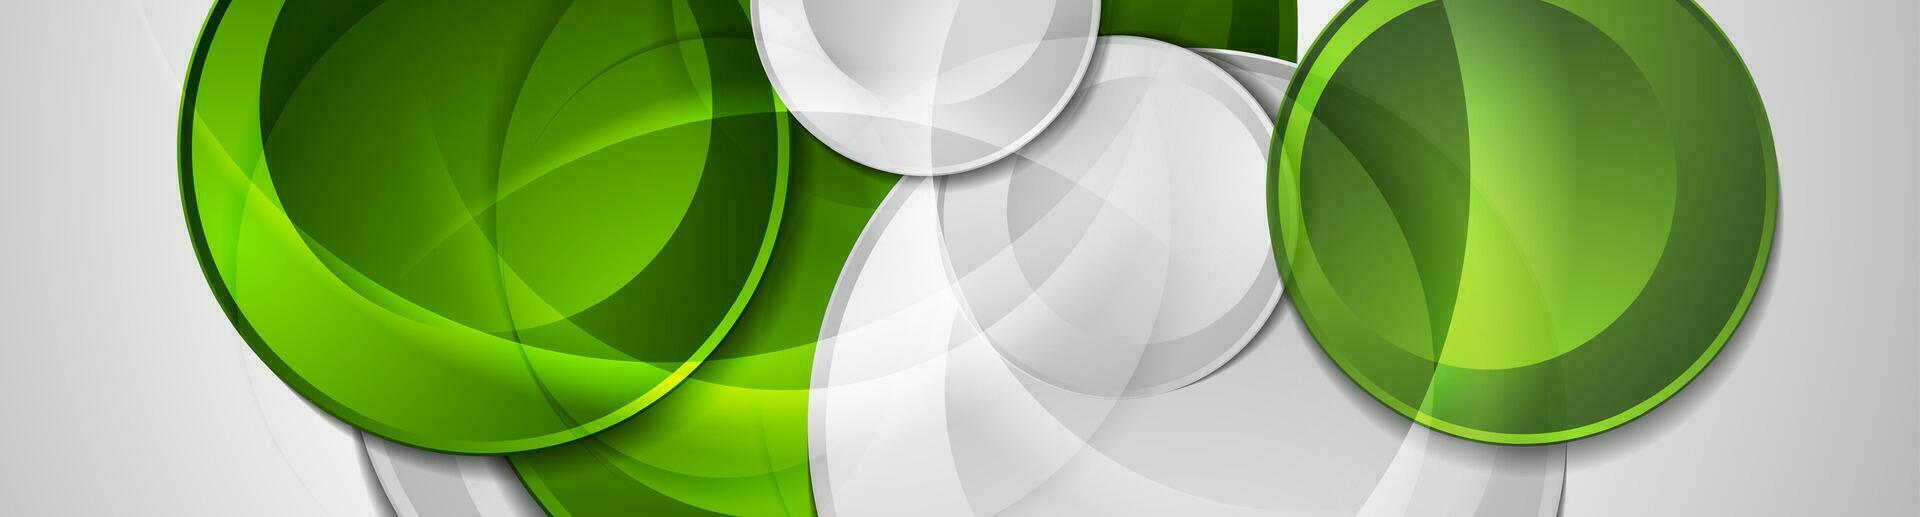 grön och grå glansig cirklar abstrakt hi-tech bannner vektor